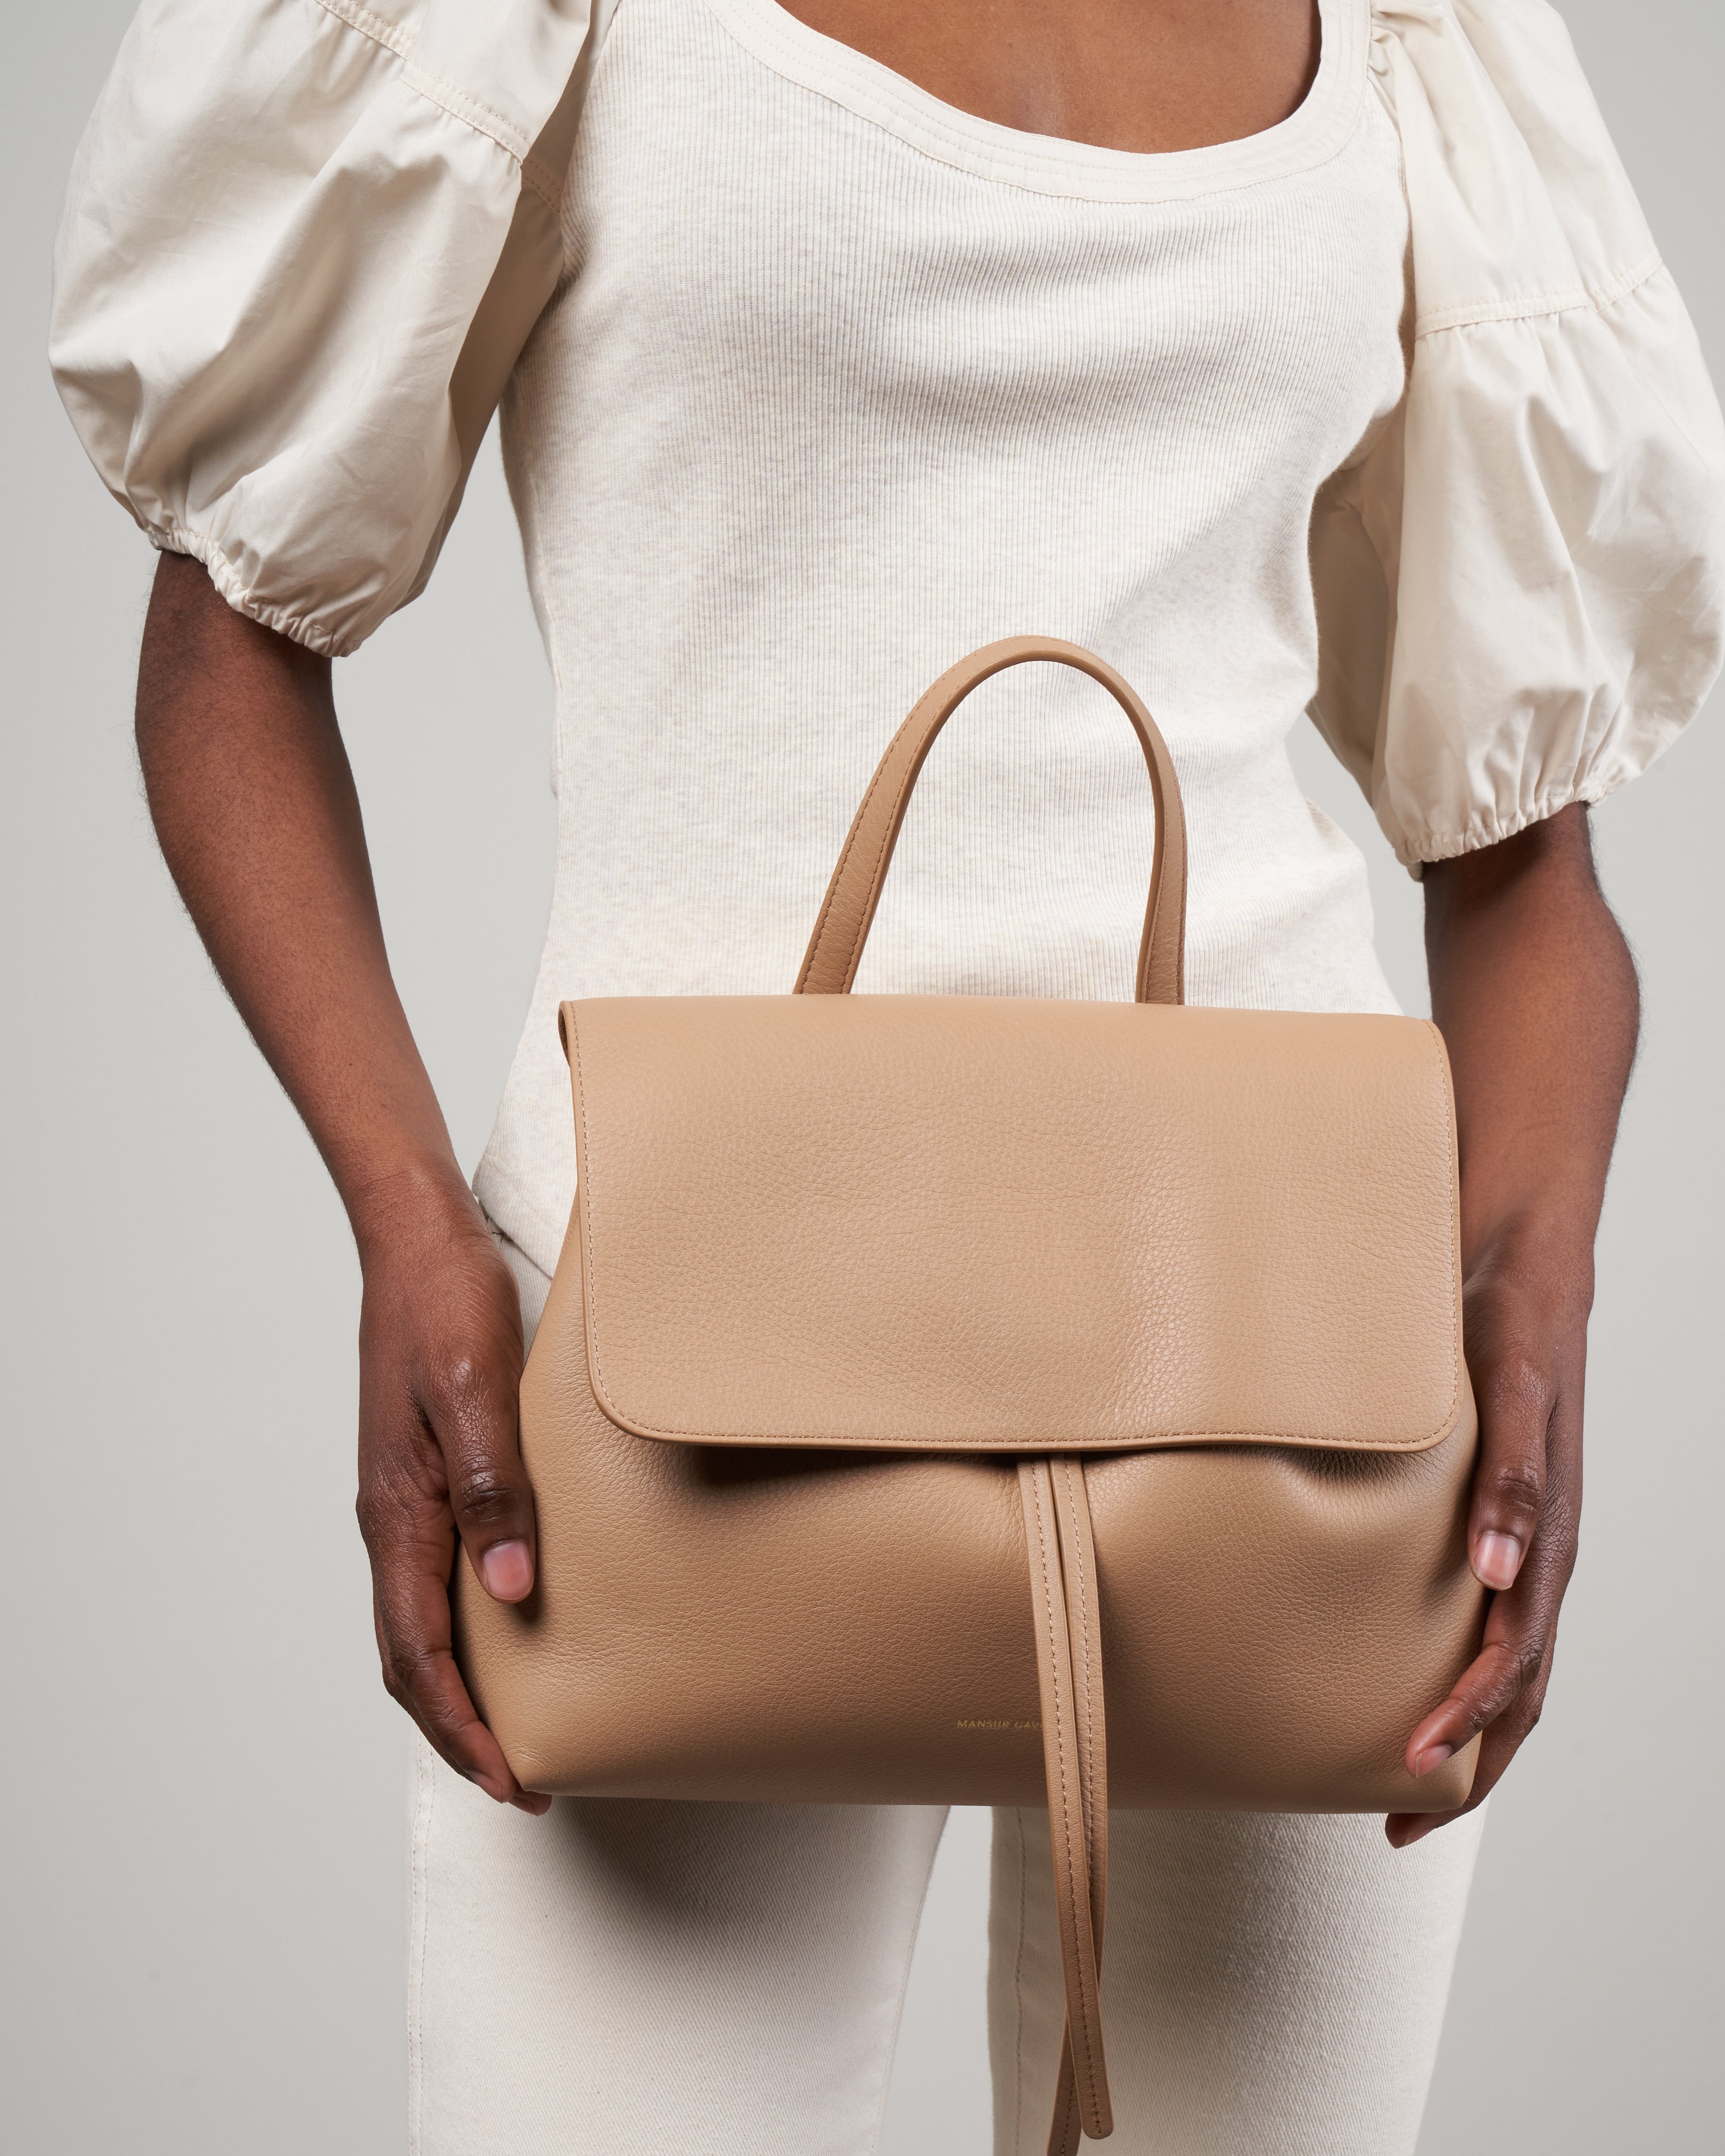 Mansur Gavriel Lady Bag Review Part 2: the large lady bag — Fairly